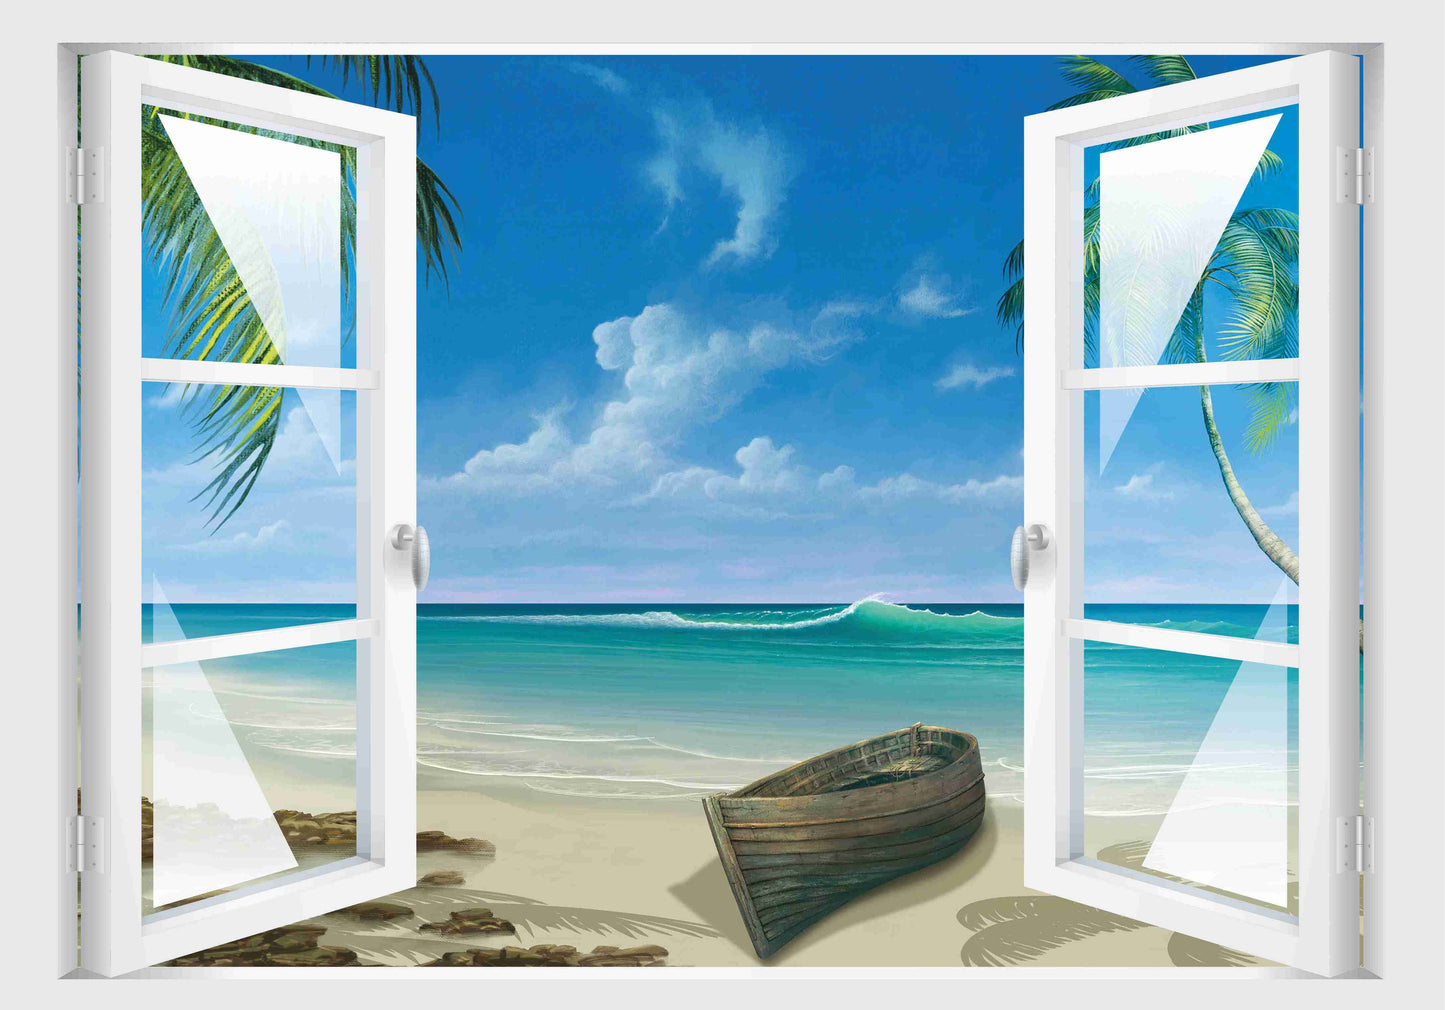 3D Fenster Wandtattoo individuell mit Deinem Wunschbild Wandaufkleber personalisiert Wandtattoo Skins4u   